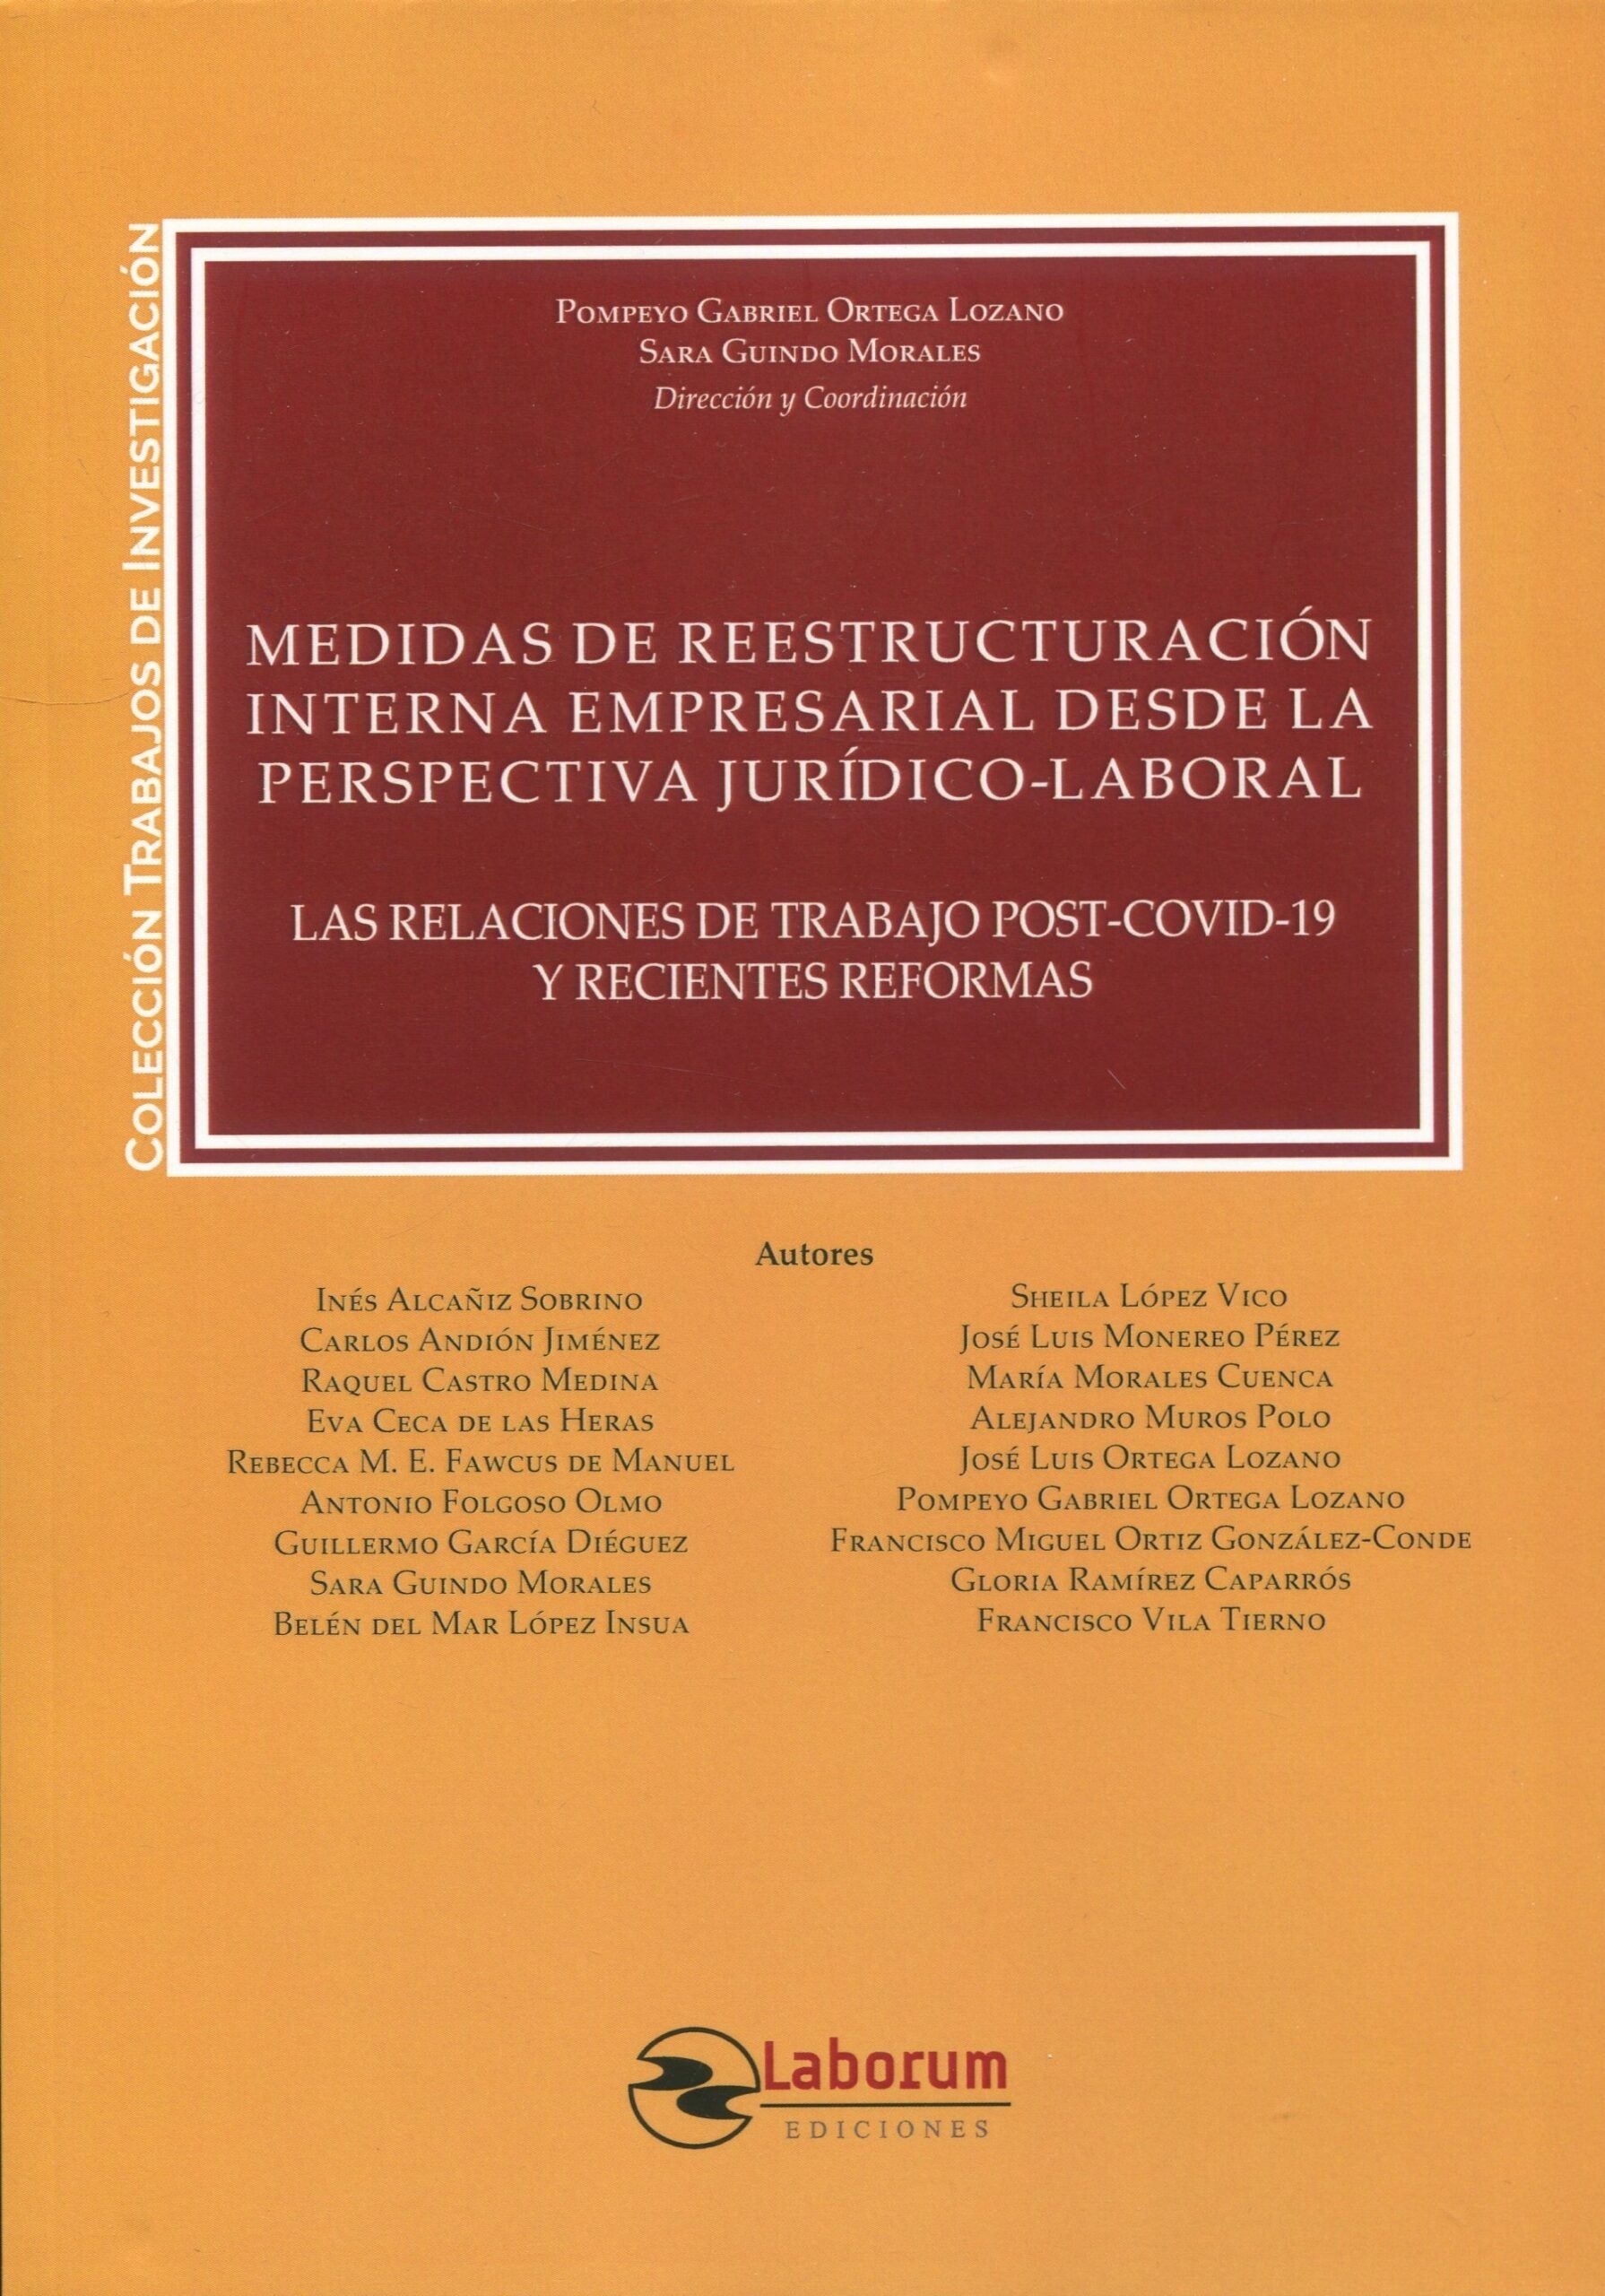 Medidas de reestructuración interna empresarial desde la perspectiva jurídico-laboral, La.